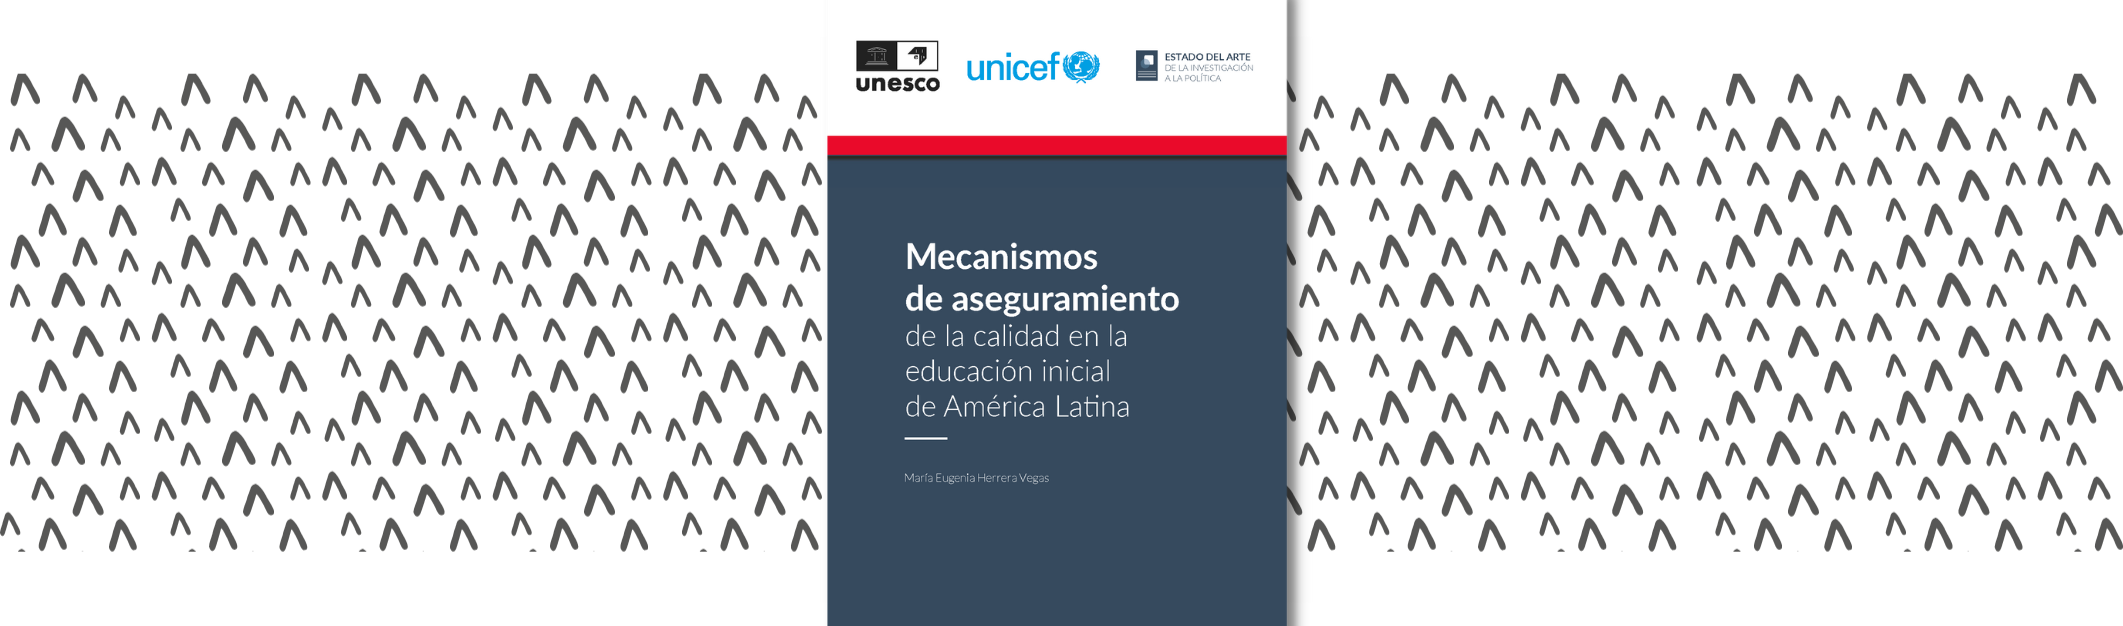 Mecanismos de aseguramiento de la calidad en la educación inicial de América Latina